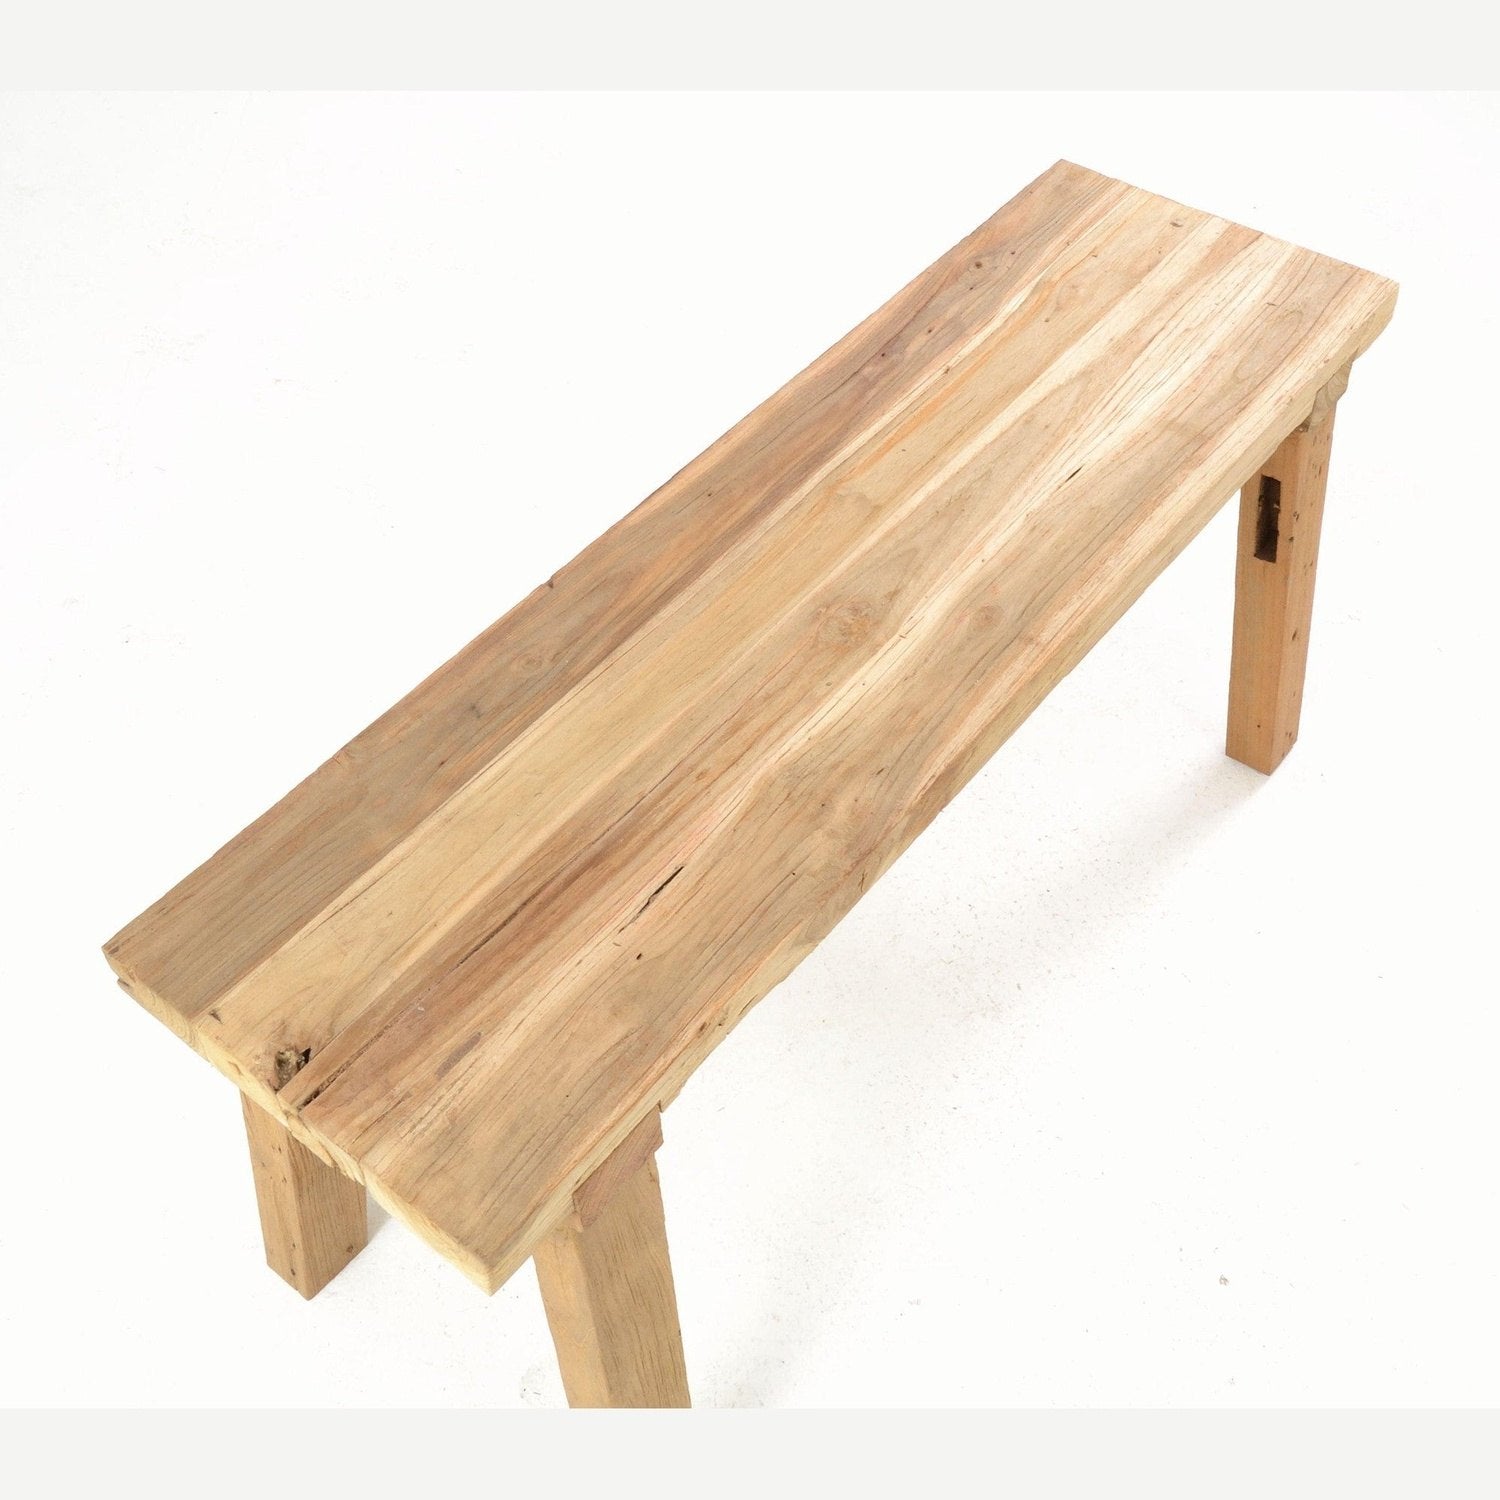 Unique Finds Rustic Solid Teak Bench - 100cm